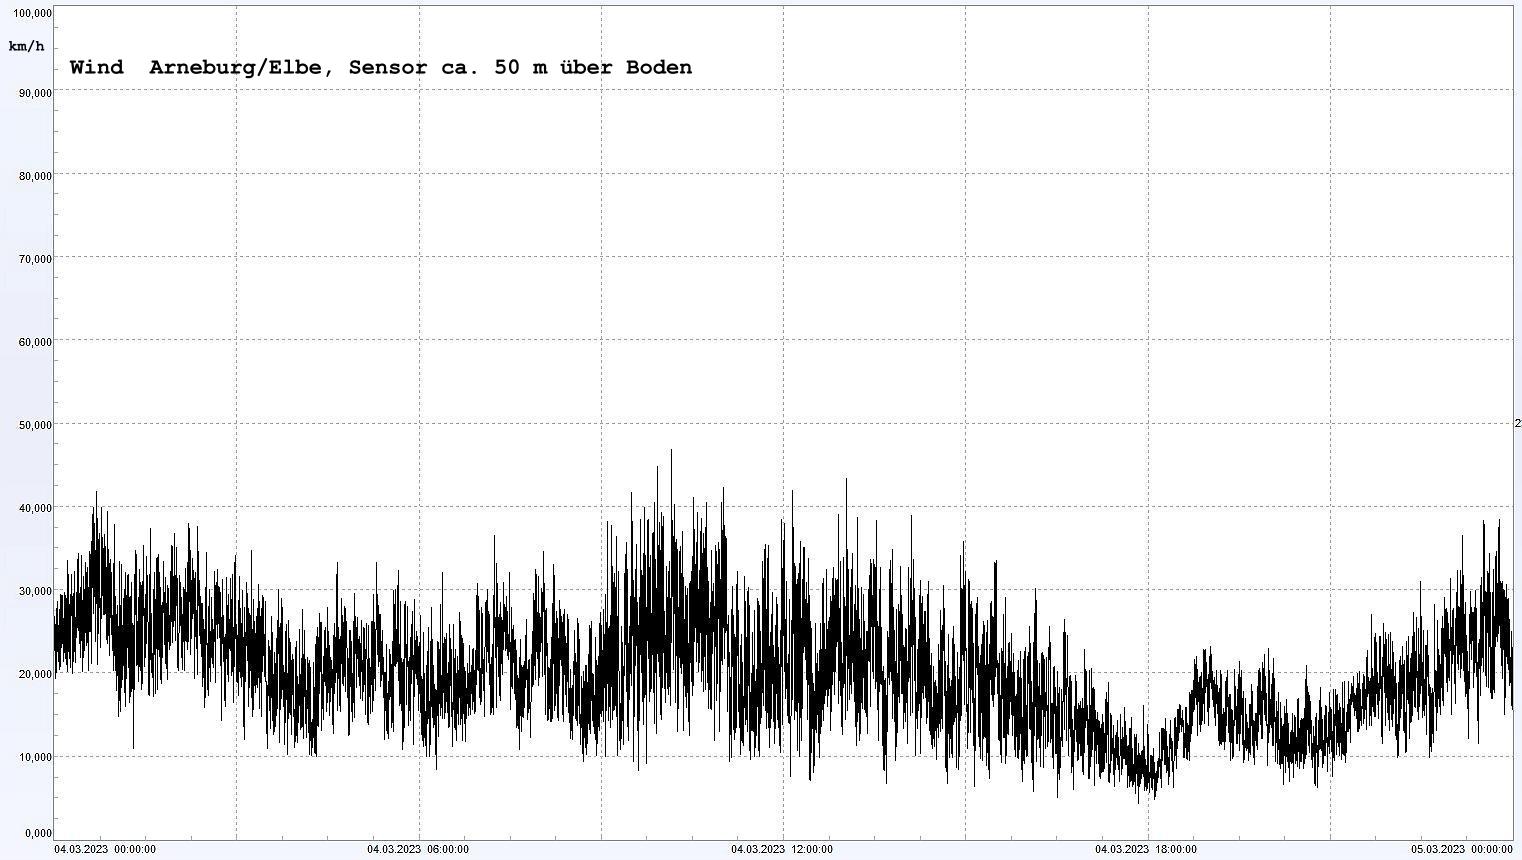 Arneburg Winddaten 04.03.2023, 
  Sensor auf Gebude, ca. 50 m ber Erdboden, 5s-Aufzeichnung